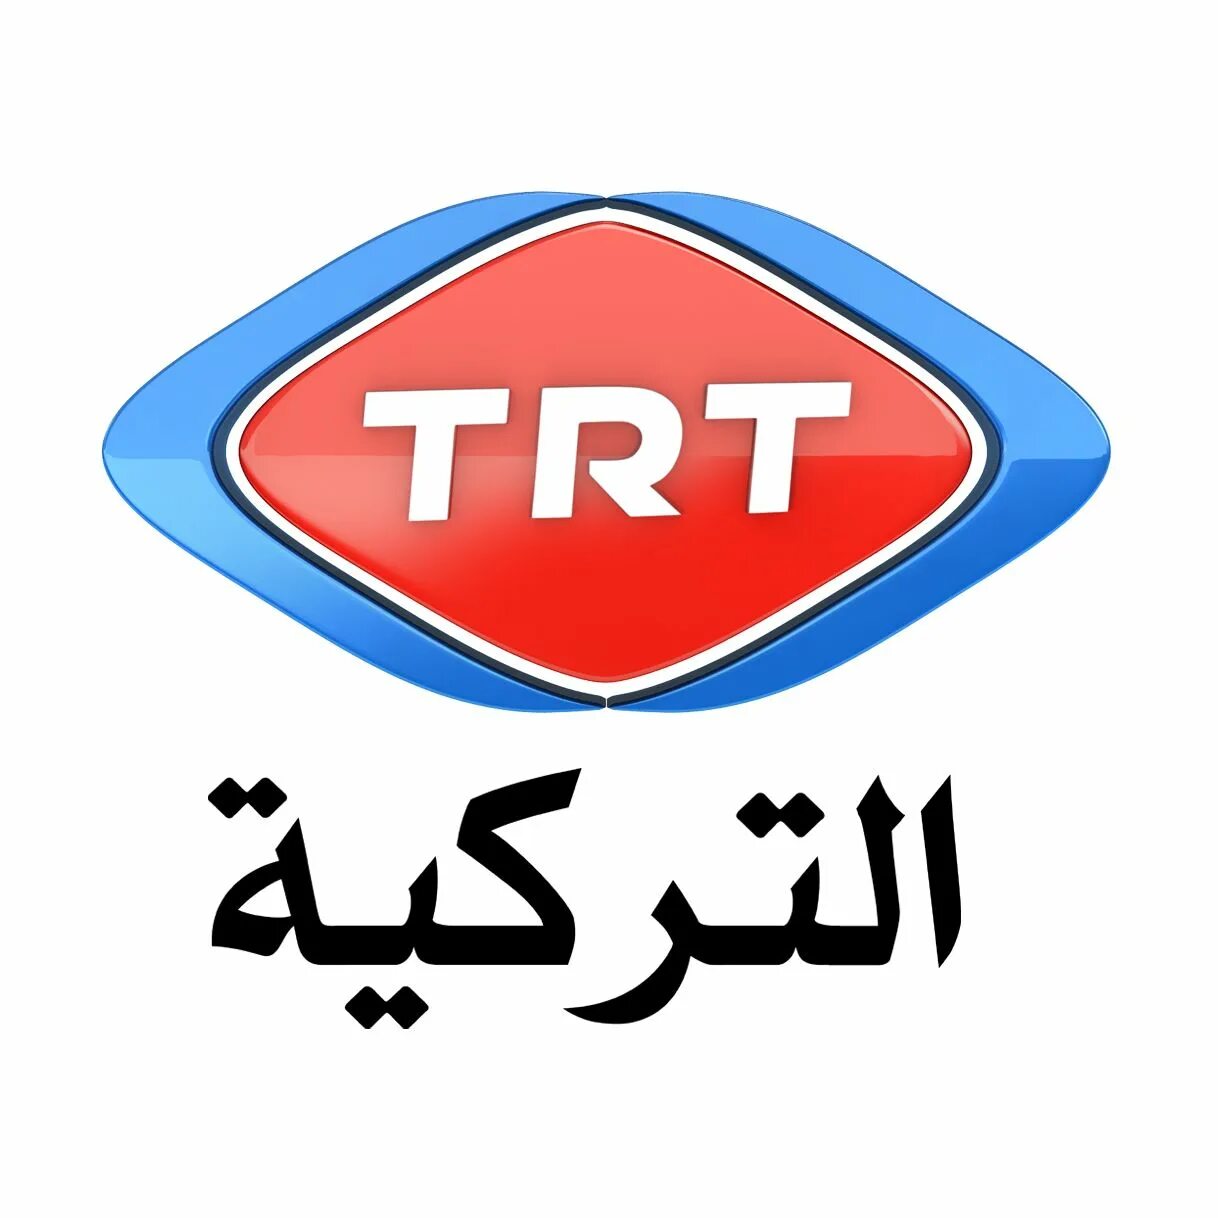 TRT. TRT TV. TRT HD. TRT logo.